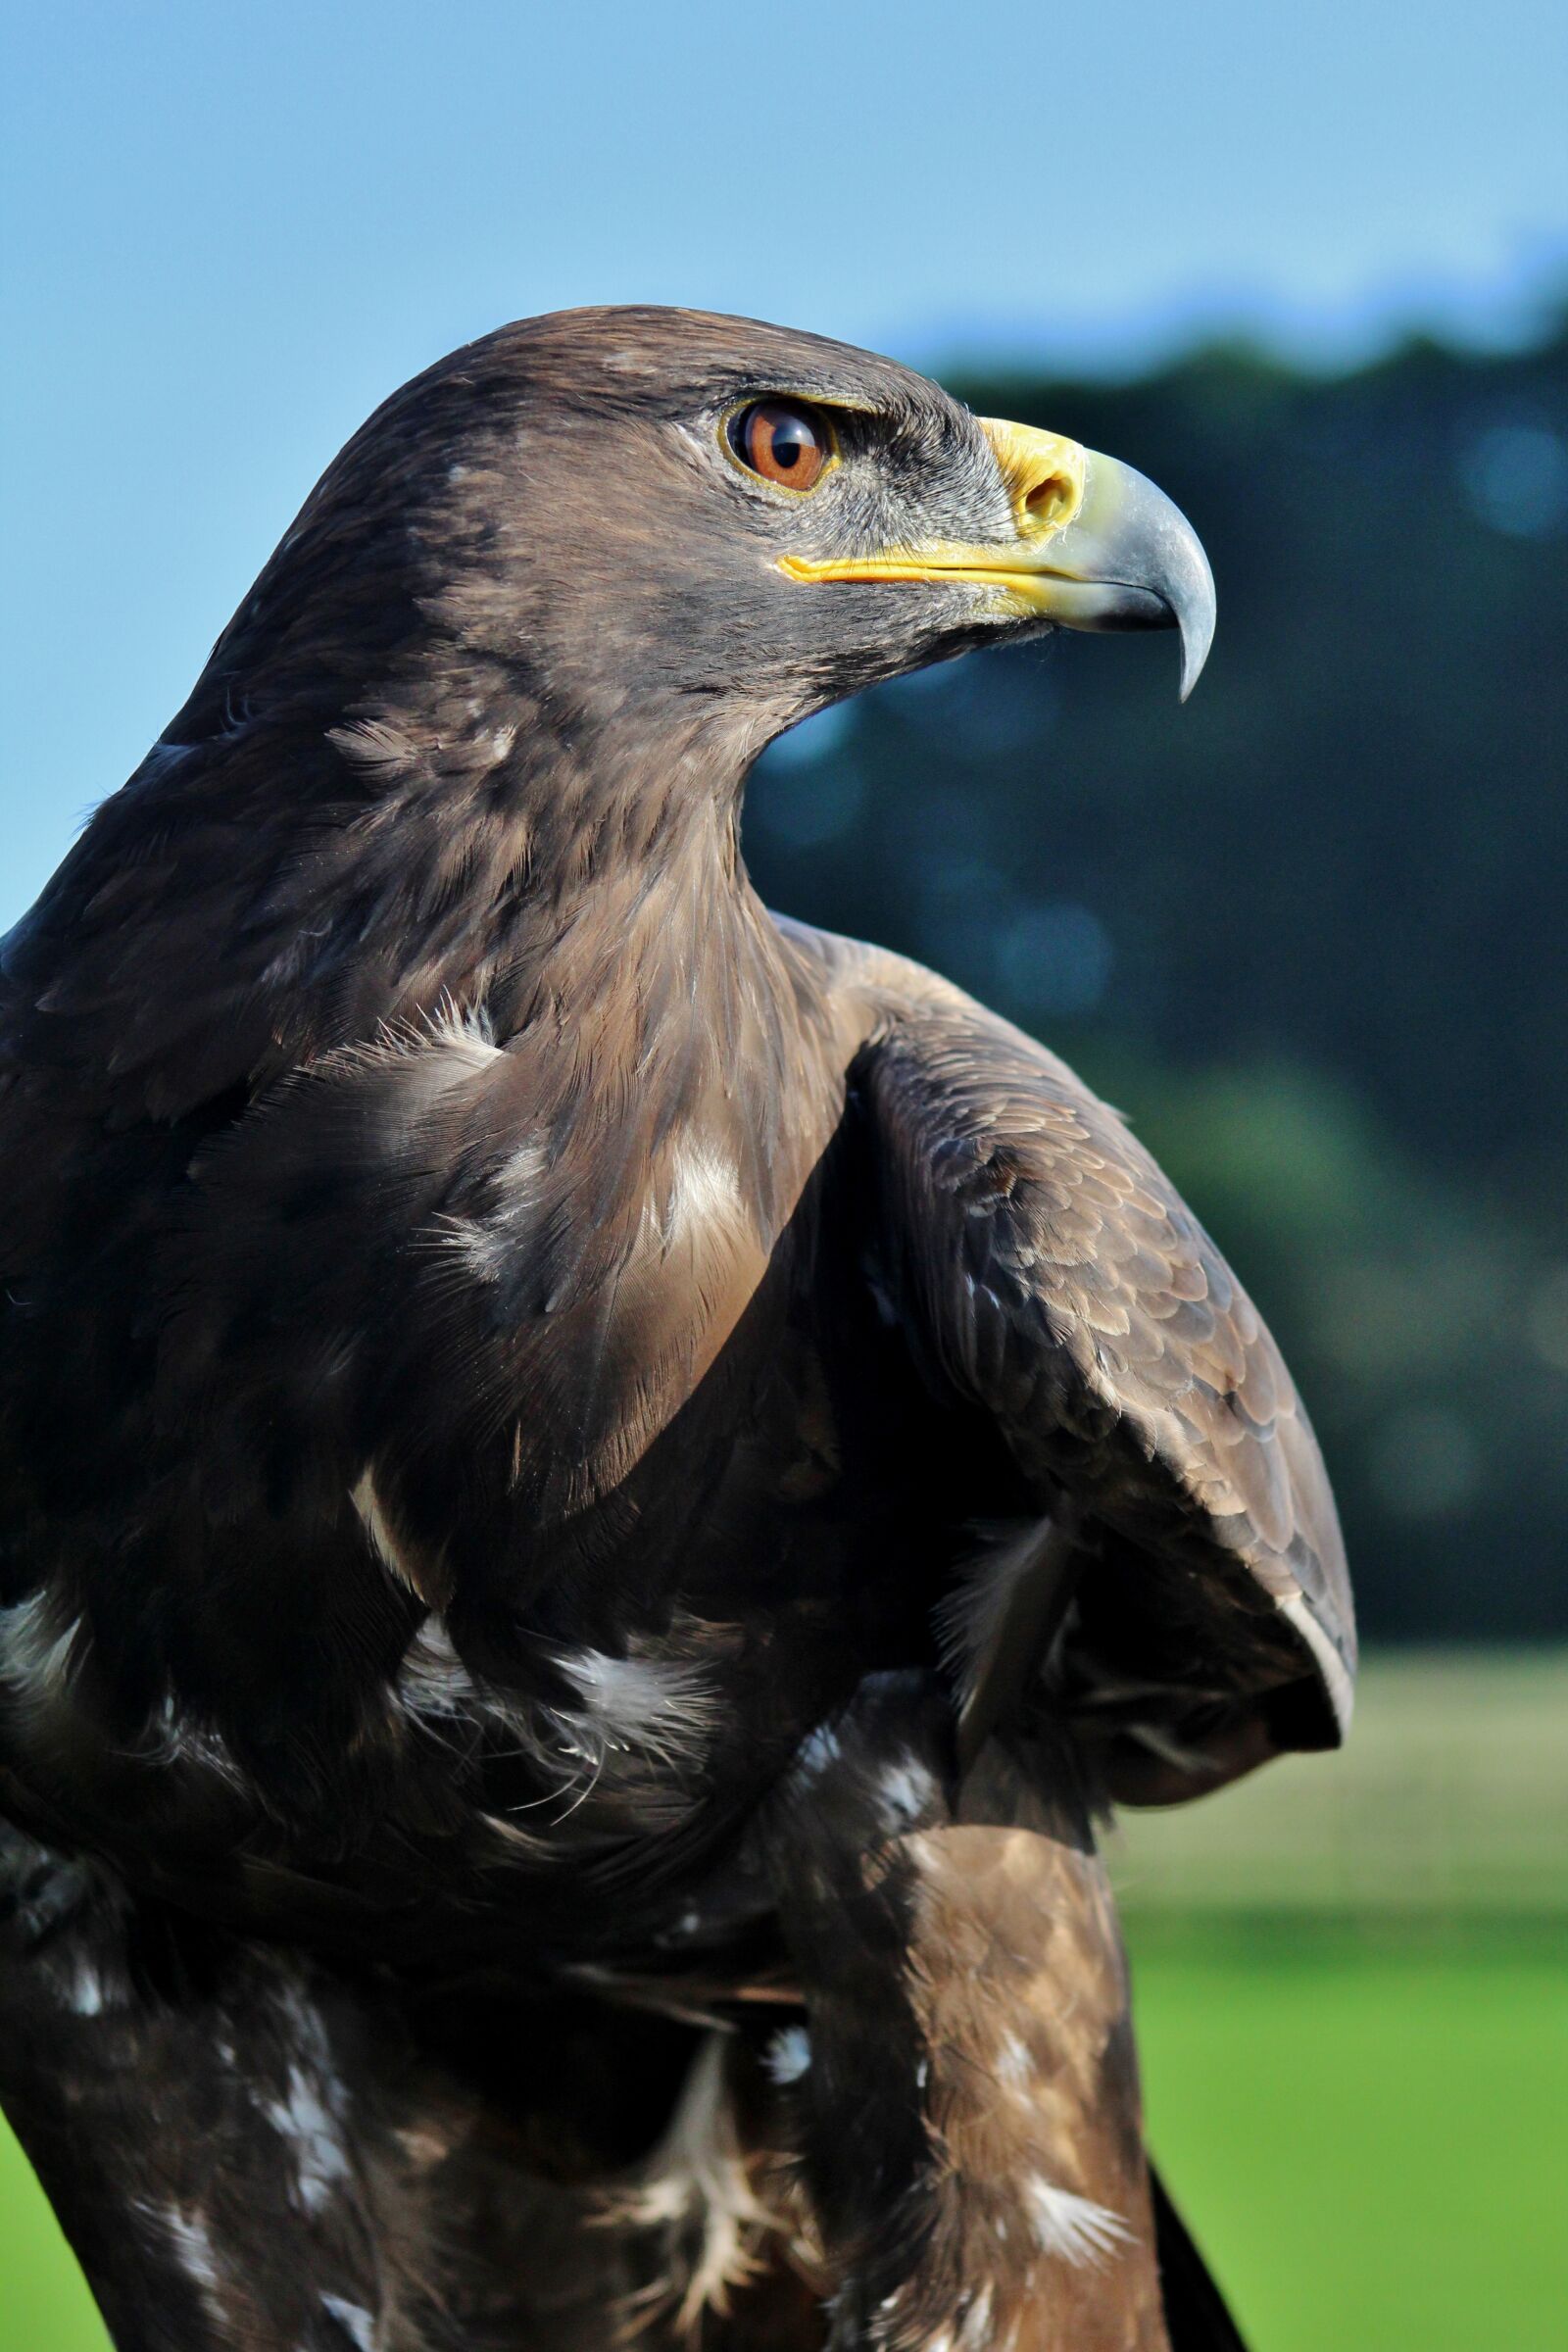 Canon EOS 600D (Rebel EOS T3i / EOS Kiss X5) sample photo. Eagle, prey, bird photography